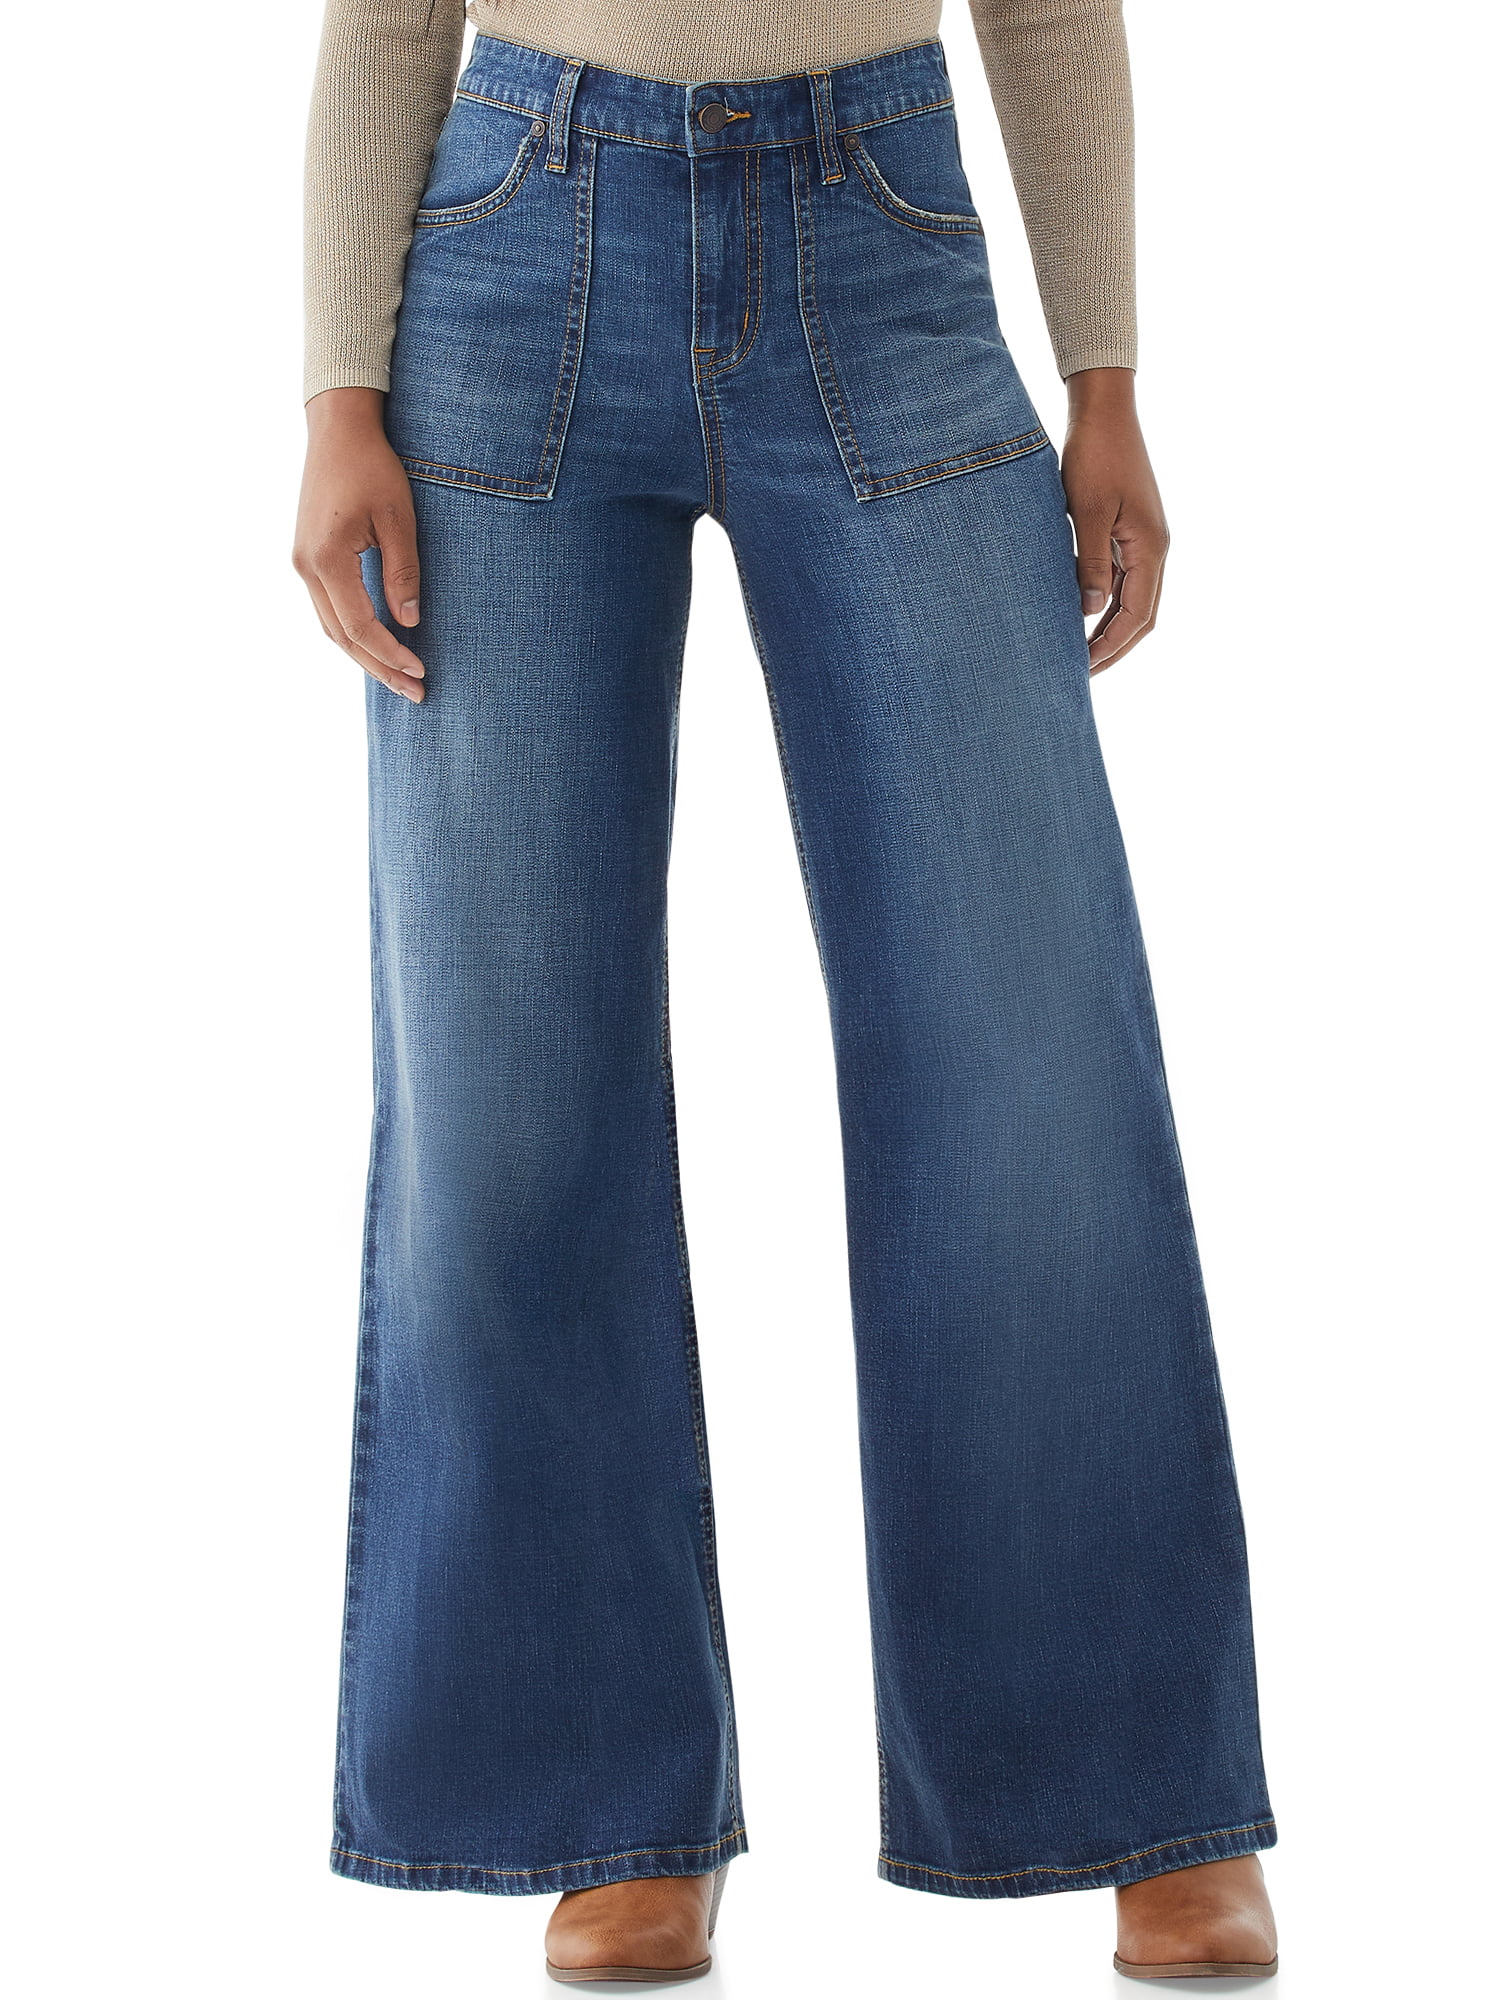 Scoop - Scoop Women's Utility Wide Leg Jeans - Walmart.com - Walmart.com